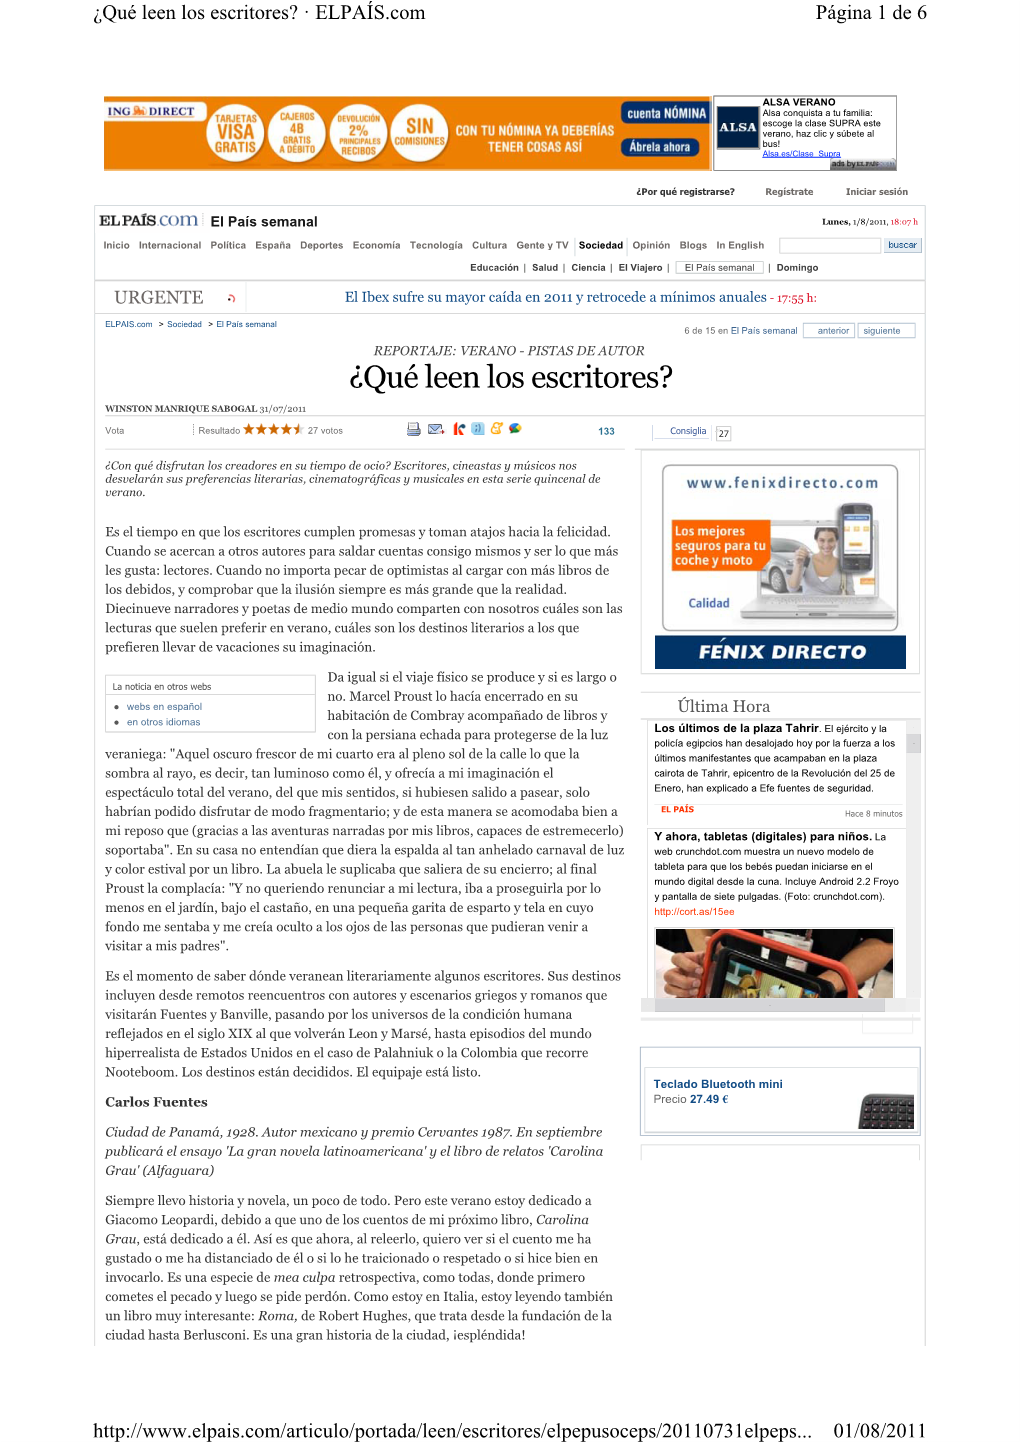 El País Semanal Lunes, 1/8/2011, 18:07 H